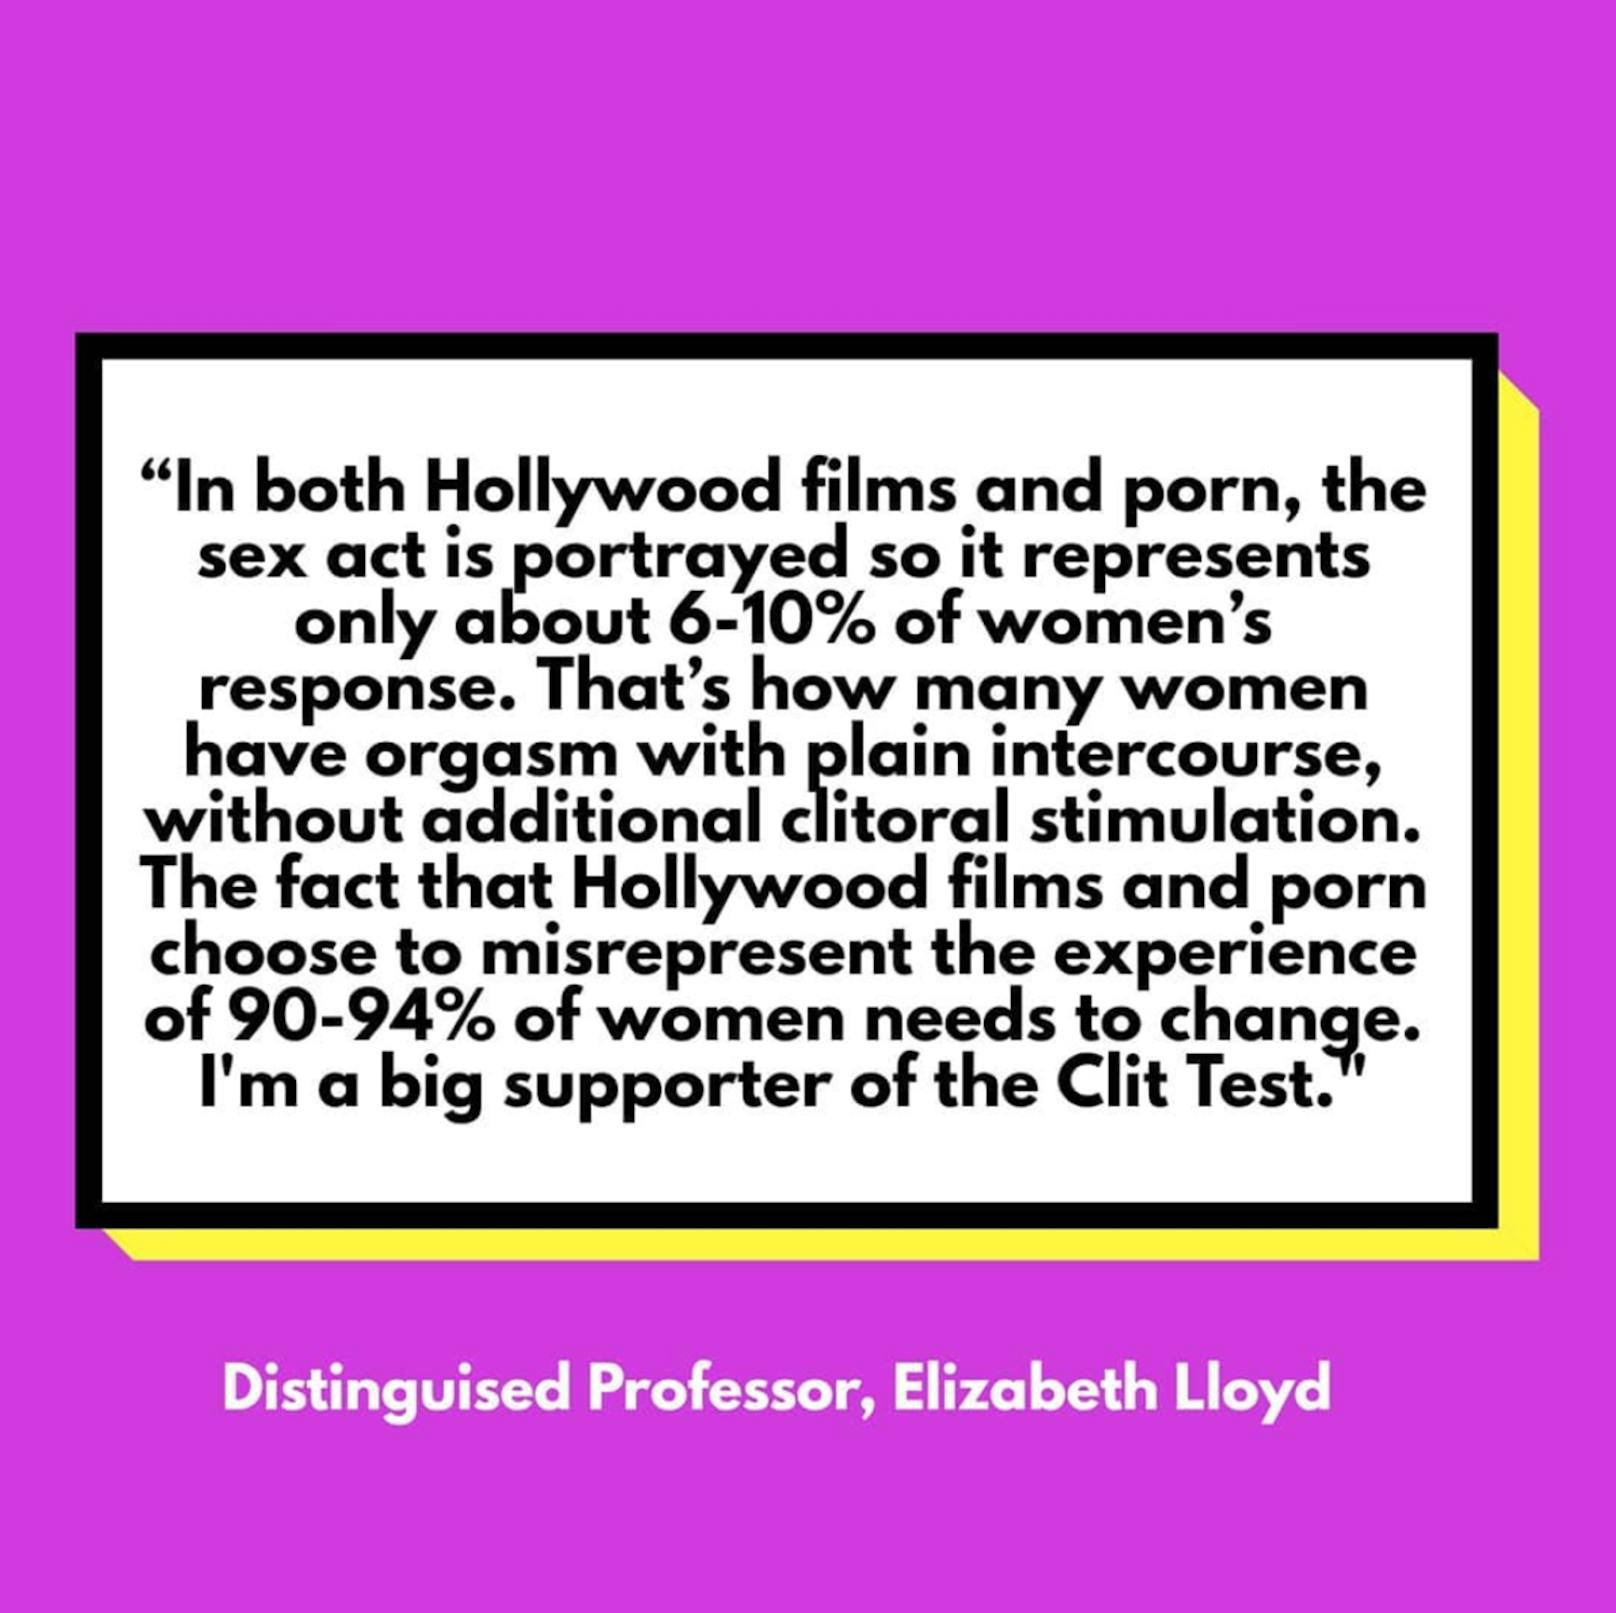 Die Zahlen stammen von Professorin und Buchautorin Elisabeth Lloyd, die in der medialen Vernachlässigung der Klitoris den Ursprung weiblichen Sex-Frusts im Alltag sieht. Dieses Ungleichgewicht kultiviere eine ganze Reihe gesellschaftlicher Probleme bis hin zu sexueller Gewalt.